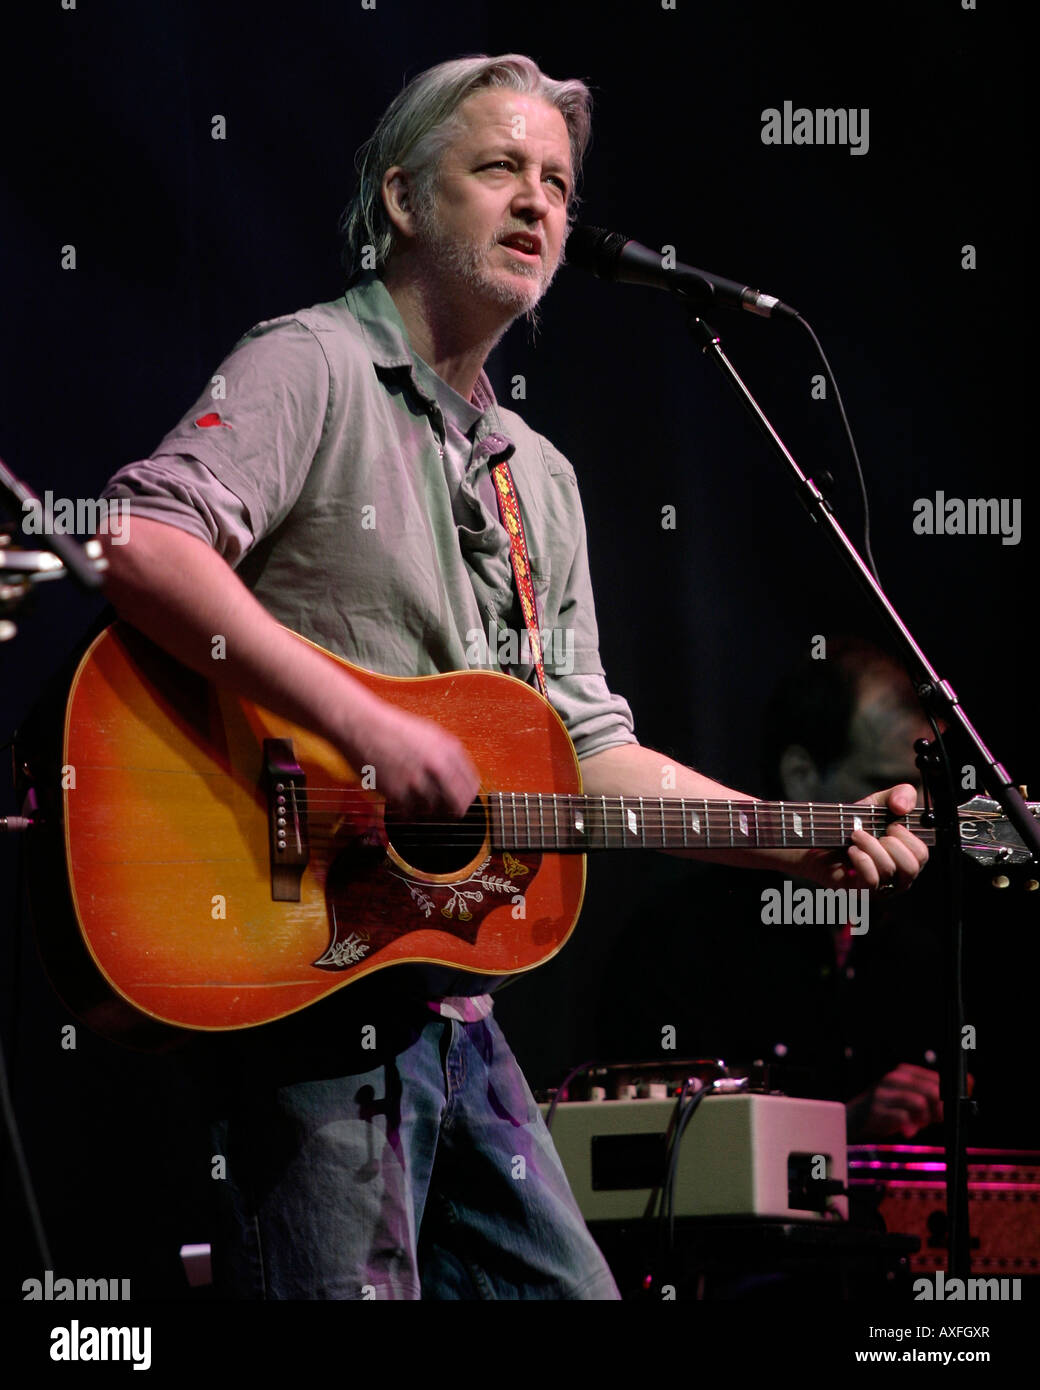 Greg Keelor von der kanadischen Band Blue Rodeo tritt live im Konzert auf. Stockfoto